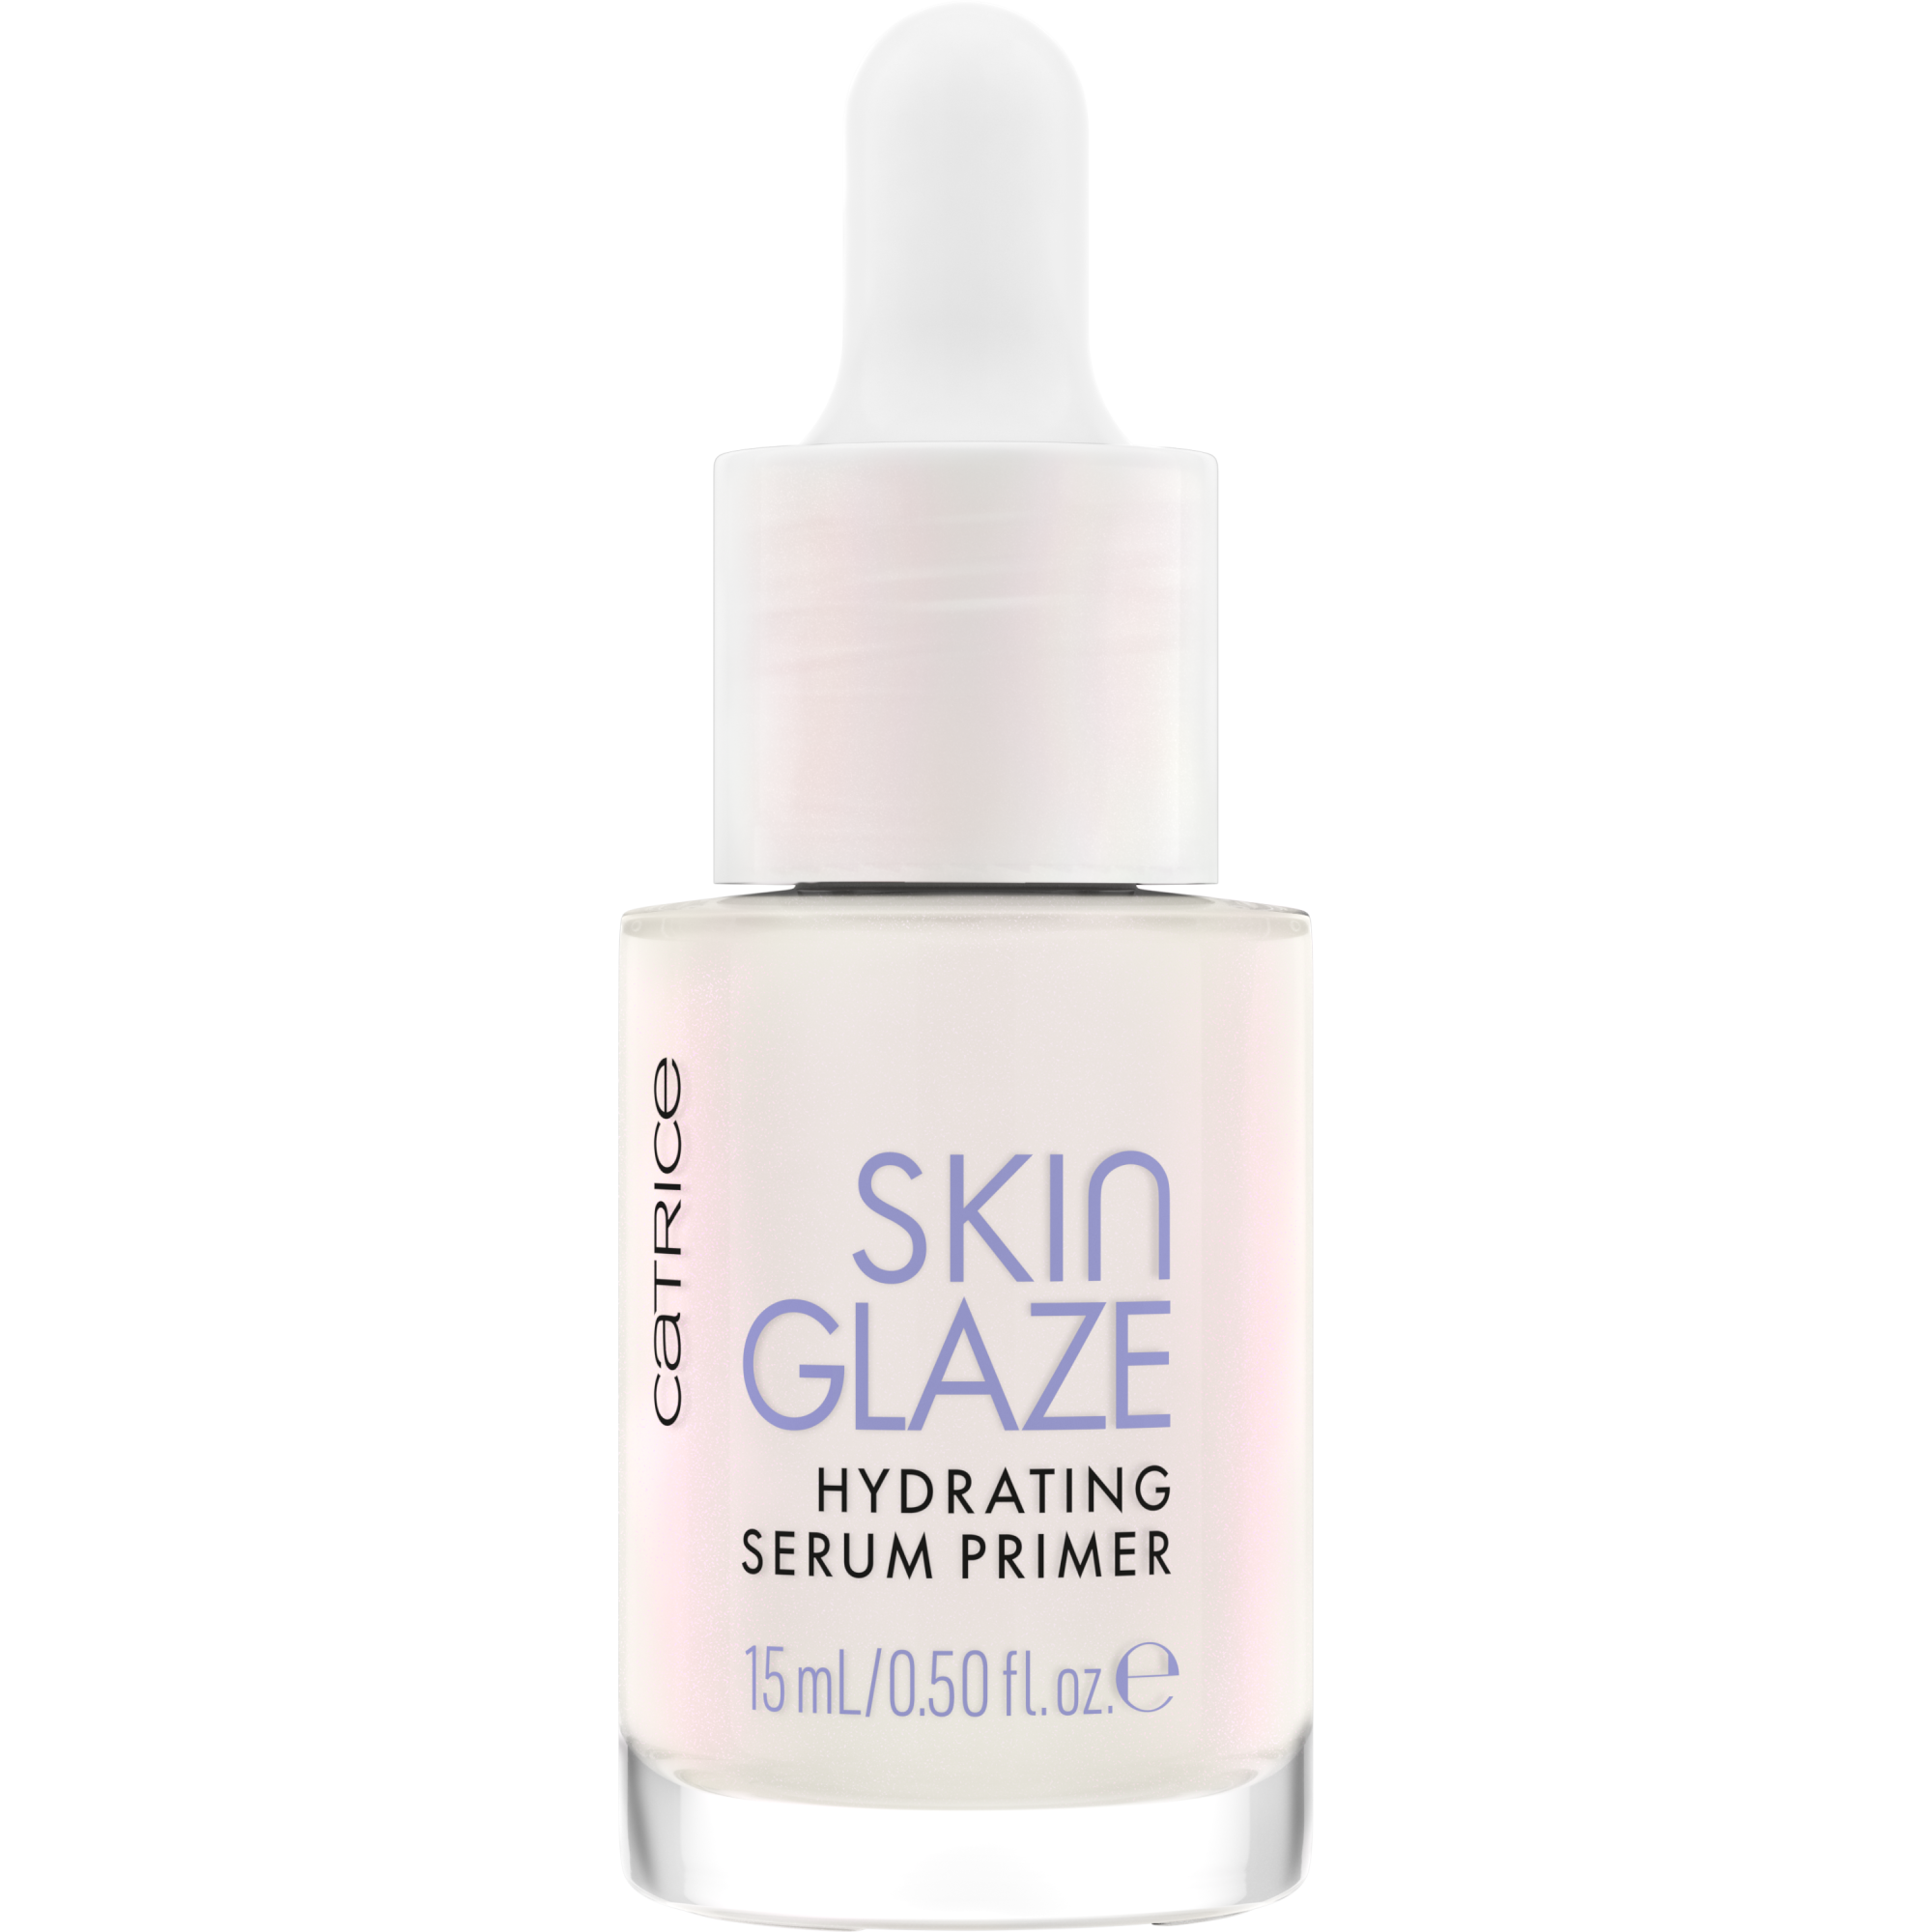 Skin Glaze Hydrating Serum Primer